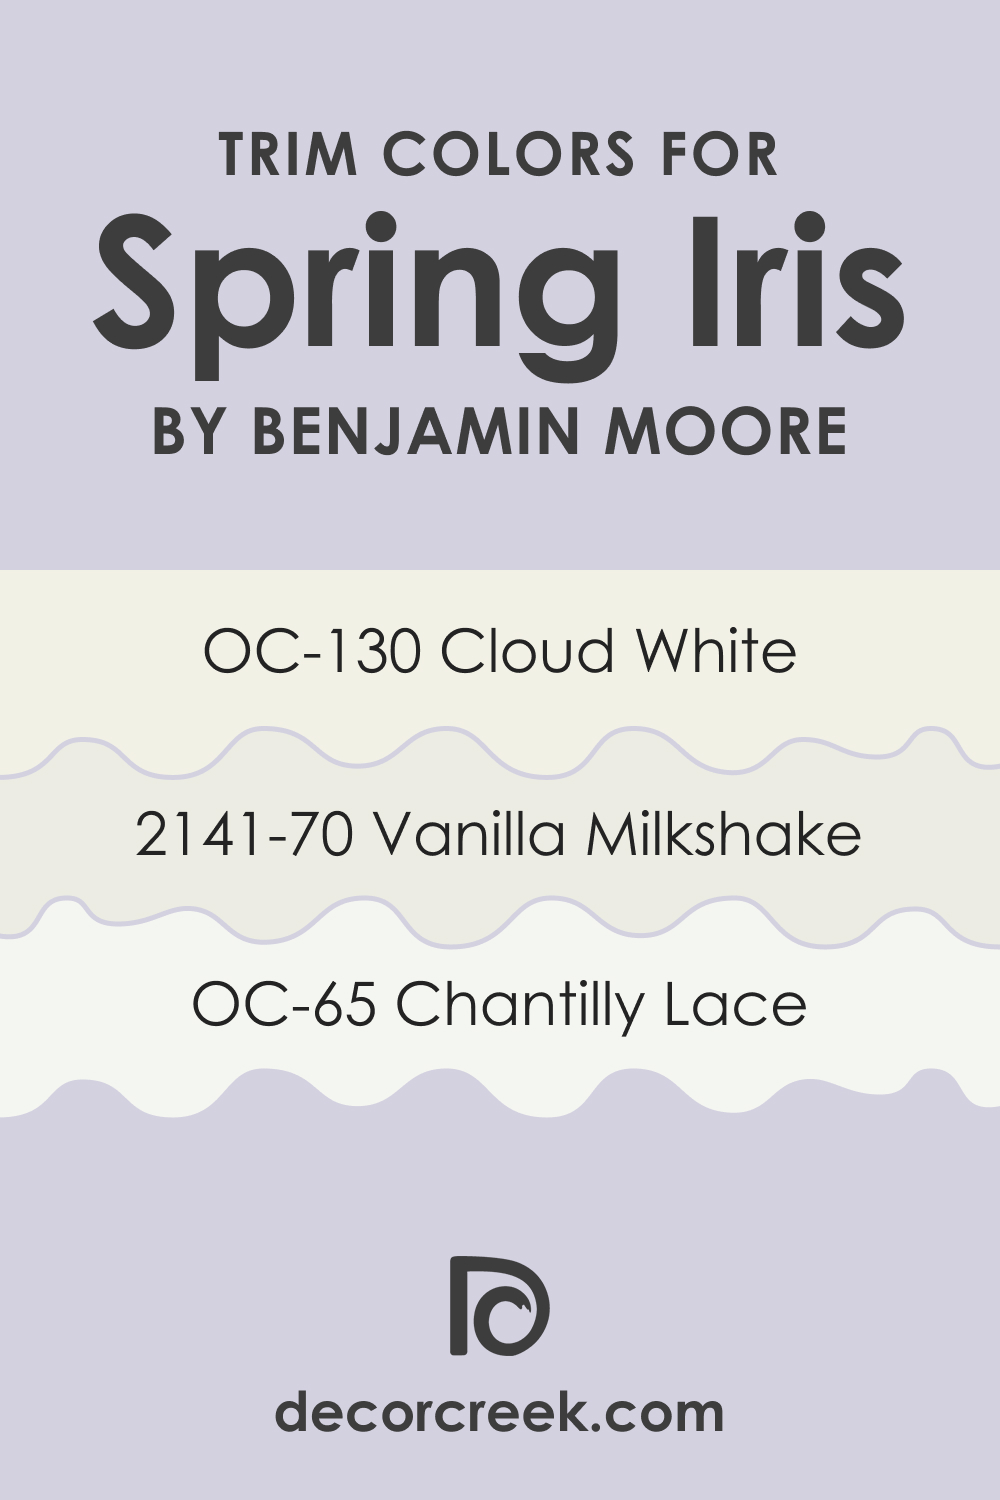 Trim Colors of Spring Iris 1402